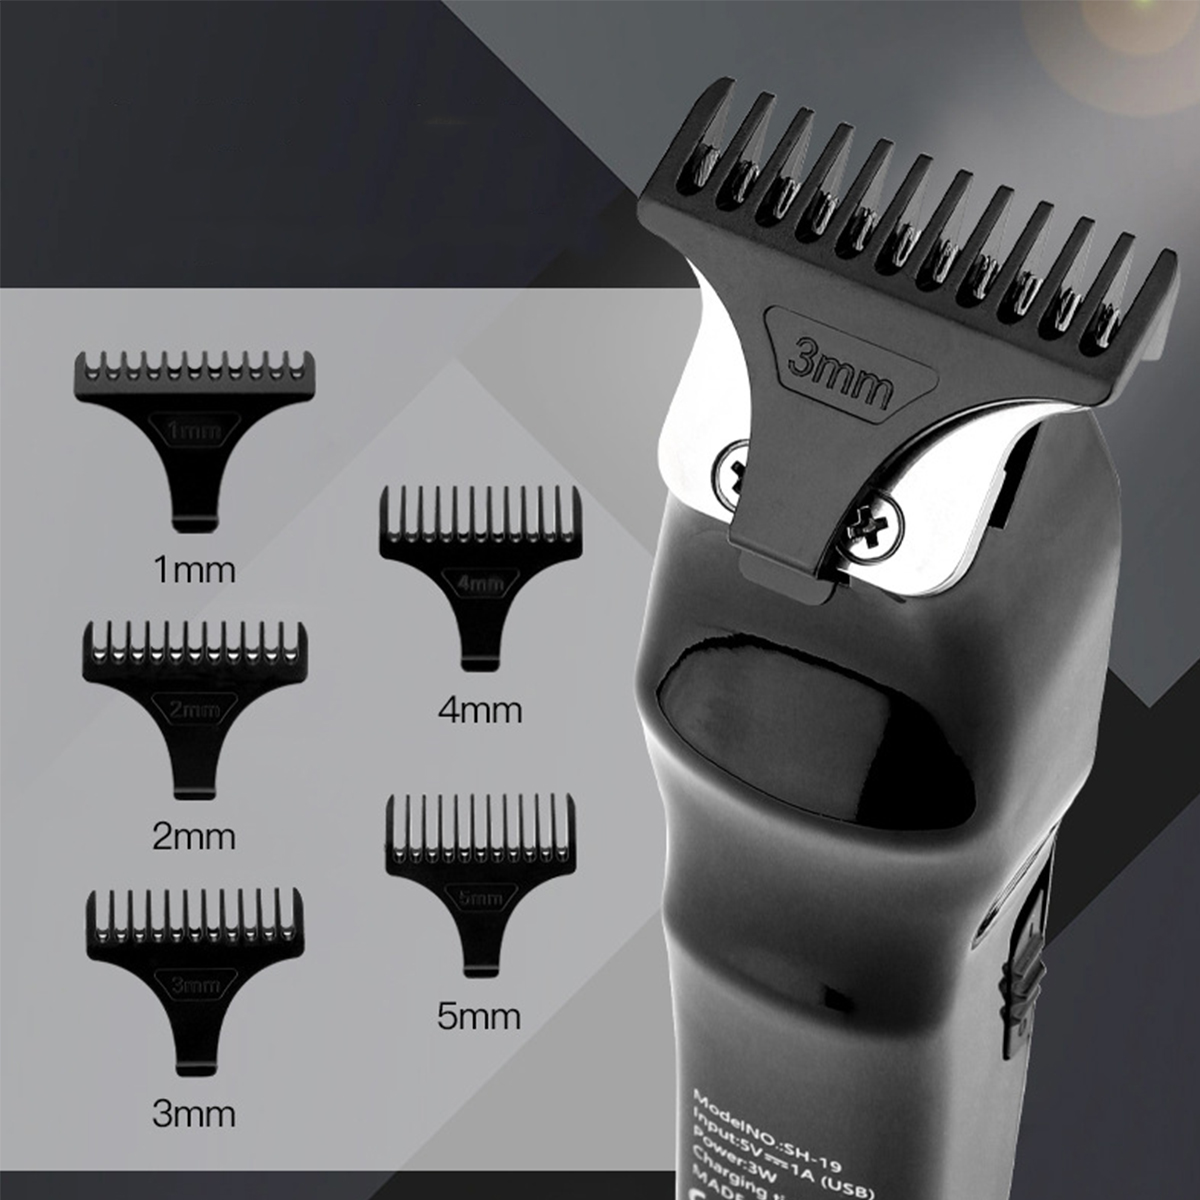 SHAOKE LCD-Haarschneider Scharfe Schnitte starke Leistung Haartrimmer-Akku Anzeige intelligente Schwarz